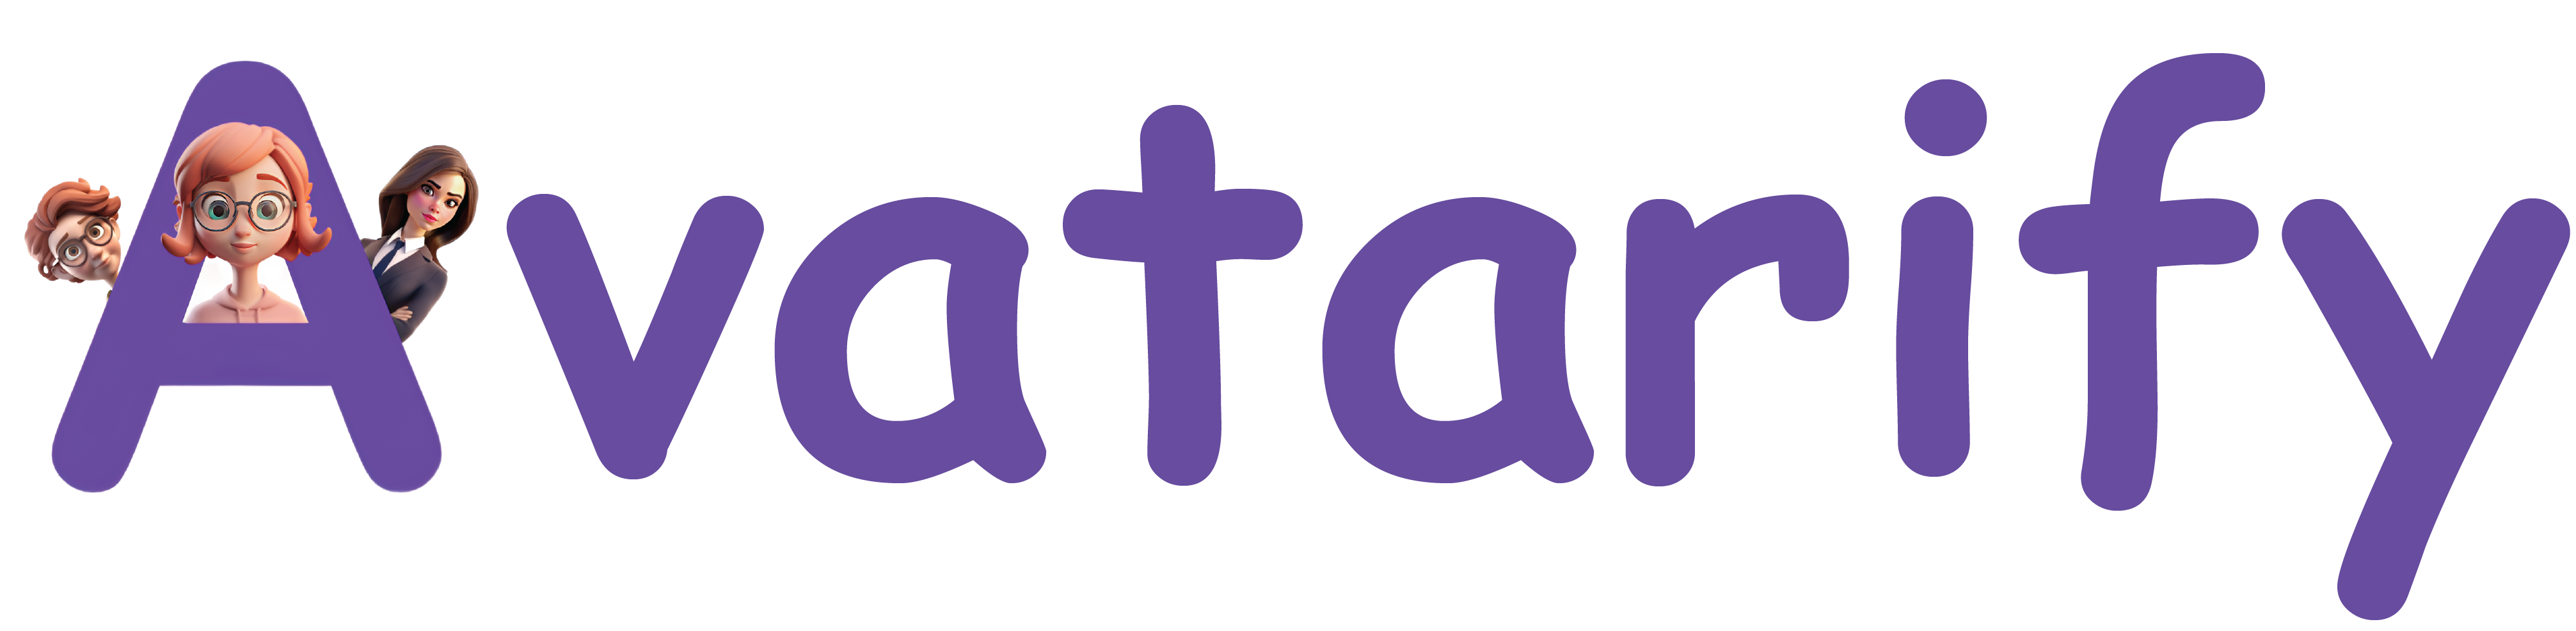 Avatarify_logo